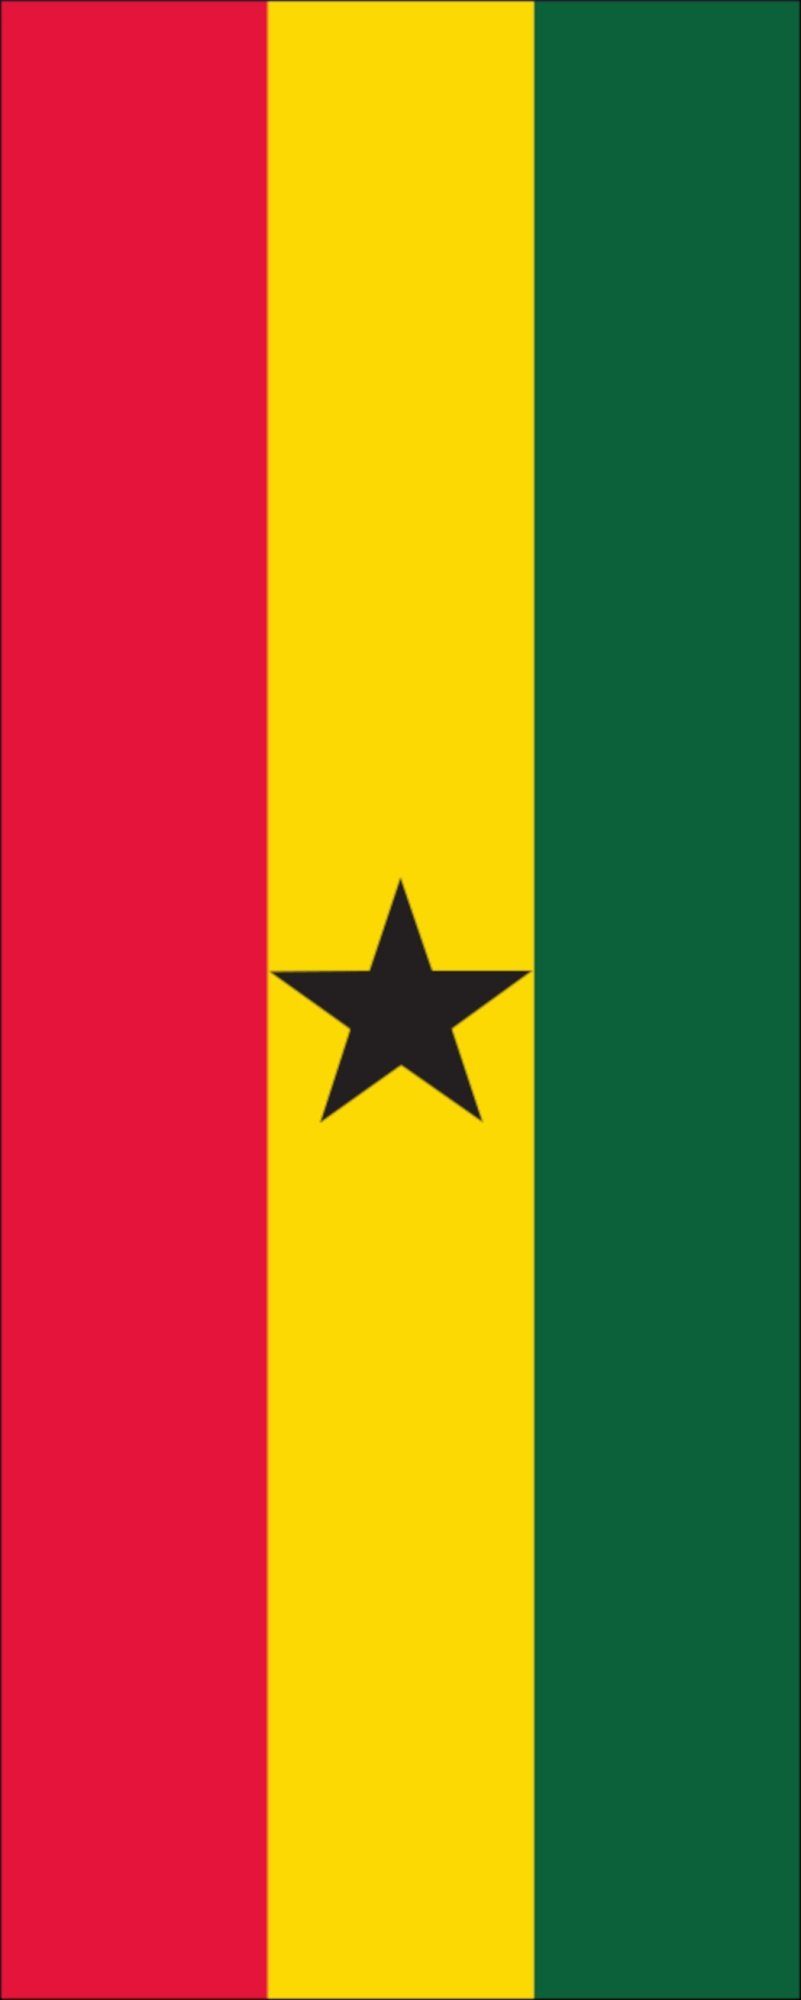 Flagge flaggenmeer g/m² Ghana Flagge Hochformat 110